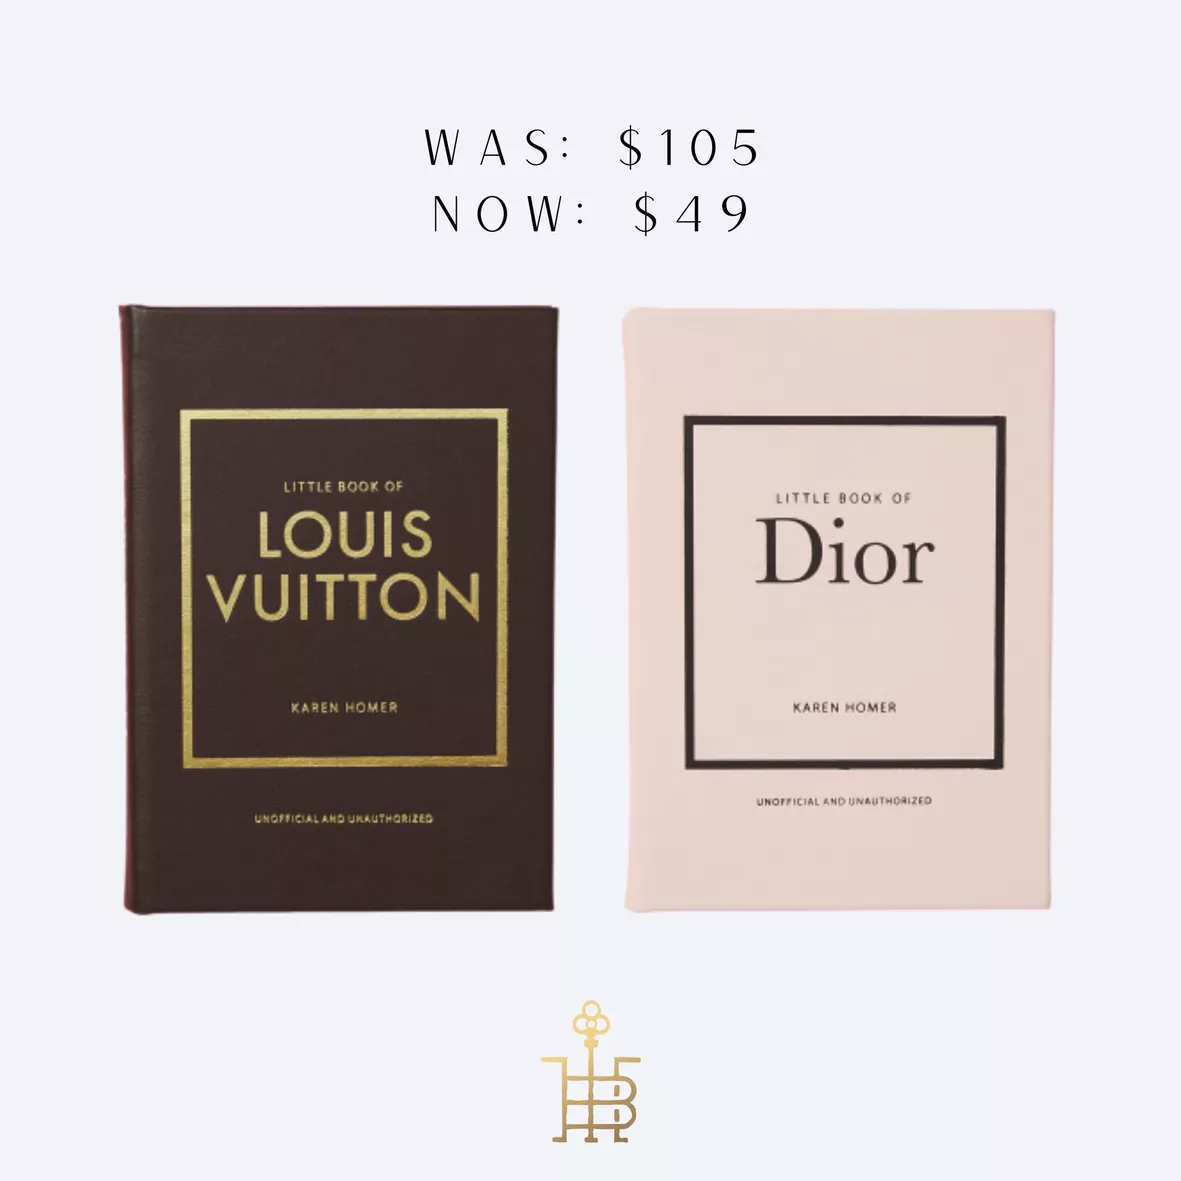 Dior Book Decor 